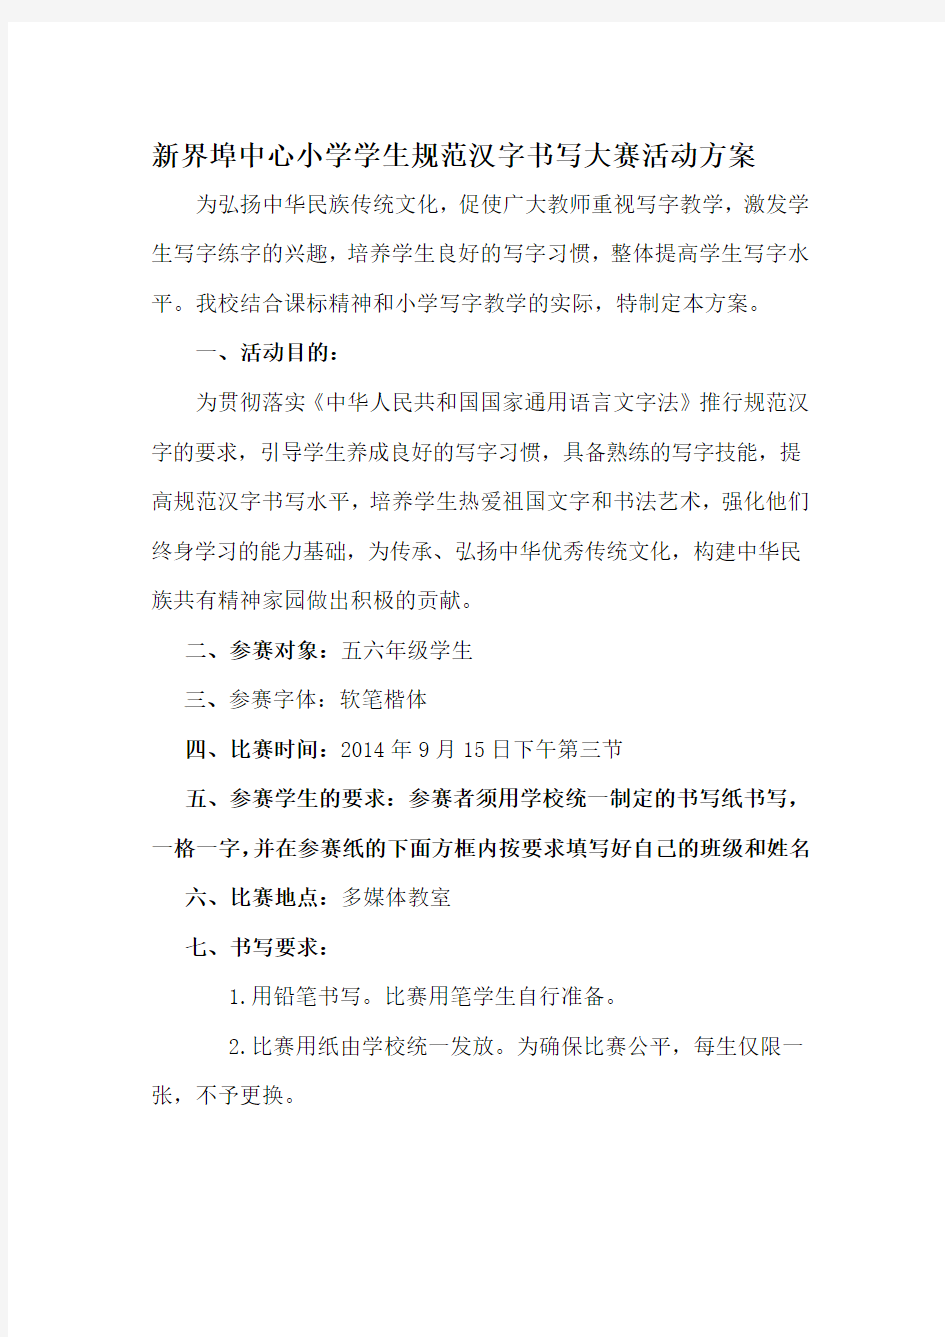 小学生规范汉字书写大赛活动方案.